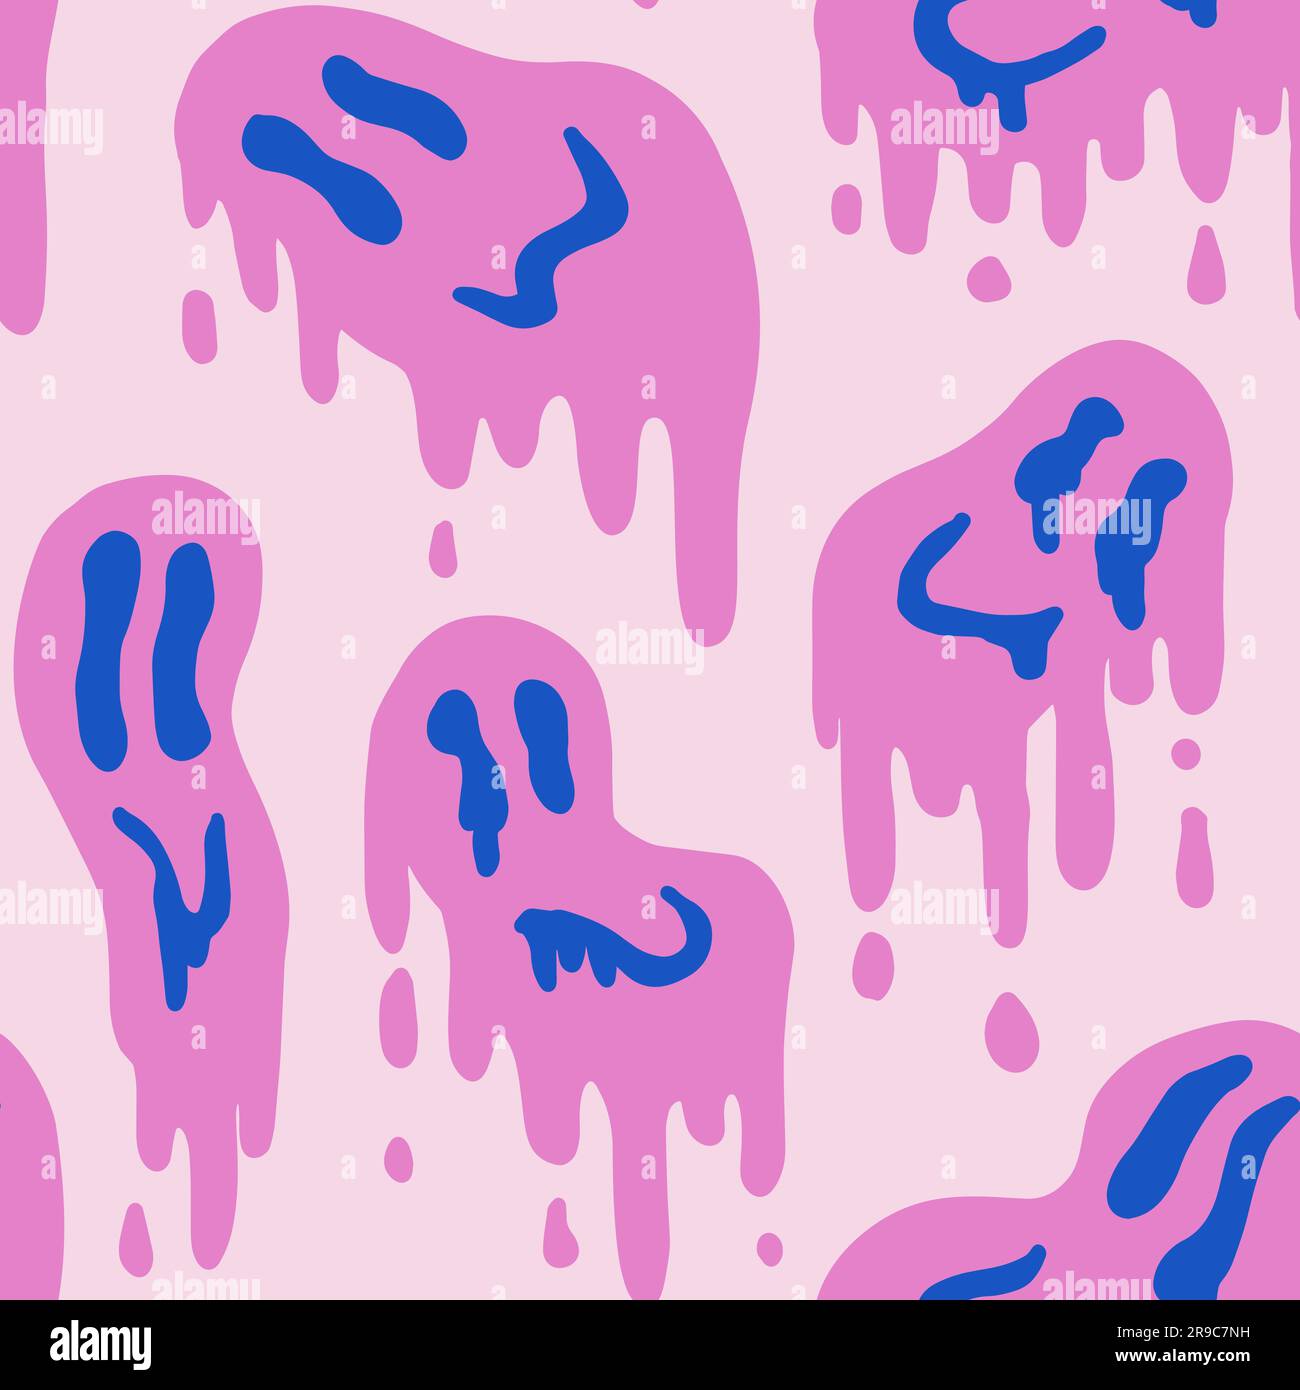 1970 modello di sorriso fluido su colore rosa e blu. Stile anni Settanta, Trippy Psychedelic Print, sfondo. Design piatto, Hippie Aesthetic. Illustrazione vettoriale disegnata a mano. Illustrazione Vettoriale